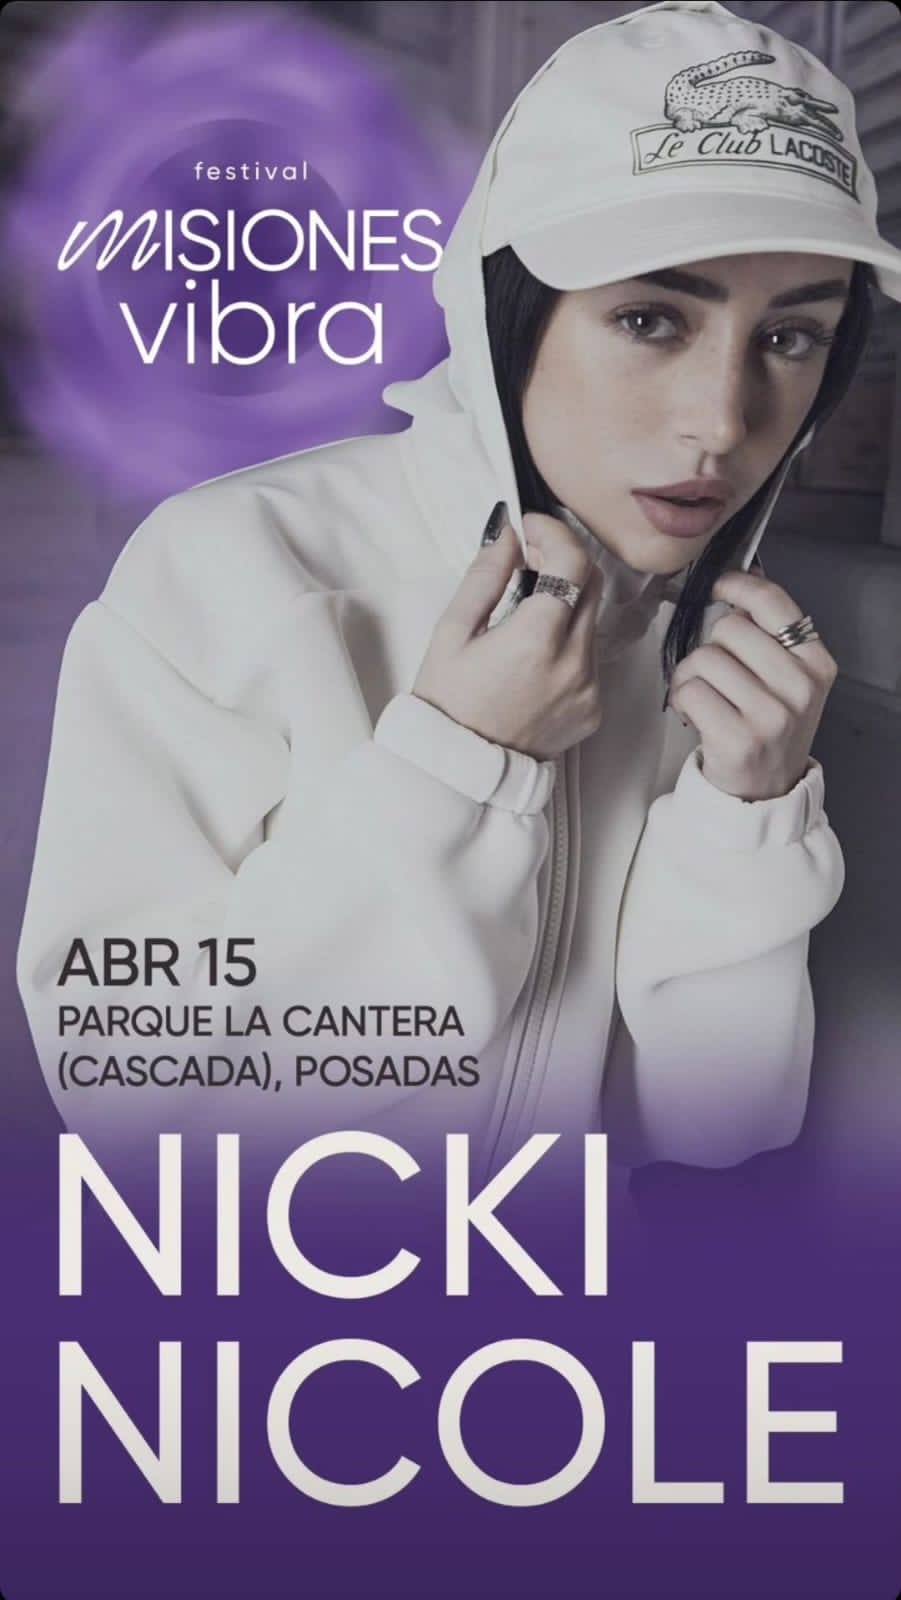 Nicki Nicole se presentará en Posadas el próximo 15 de abril